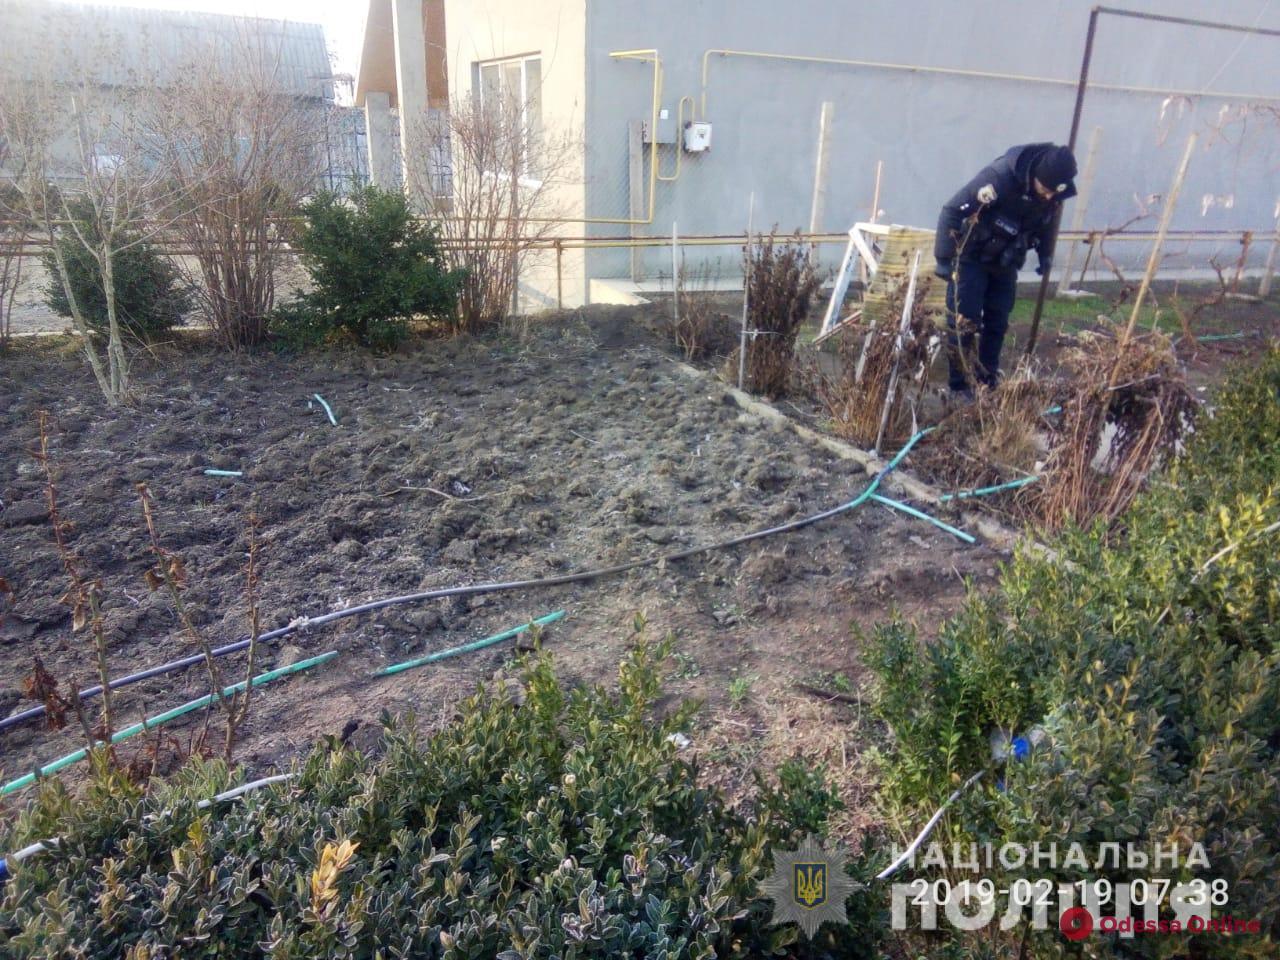 Одесская область: во дворе дома прогремел взрыв